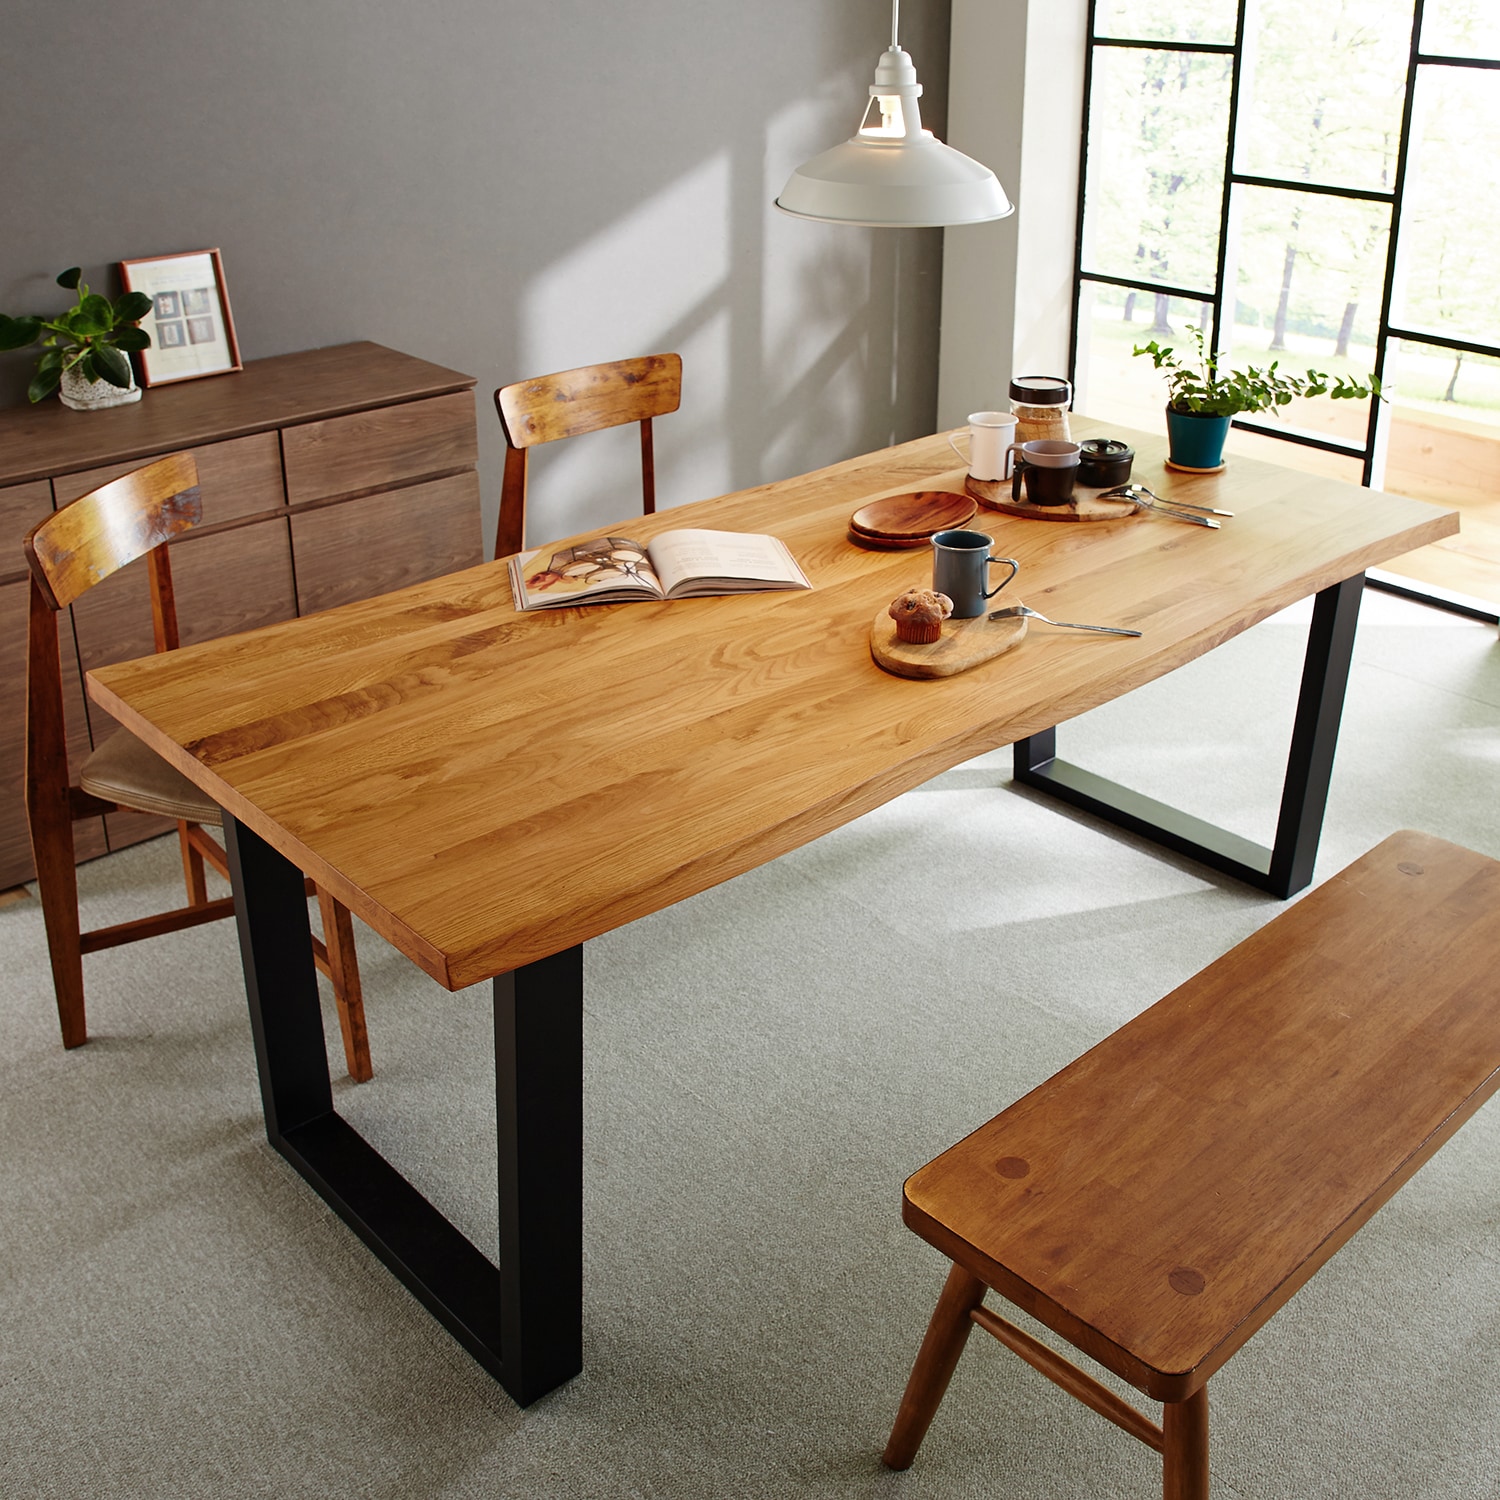 免税品購入 天然木材テーブル センターテーブル